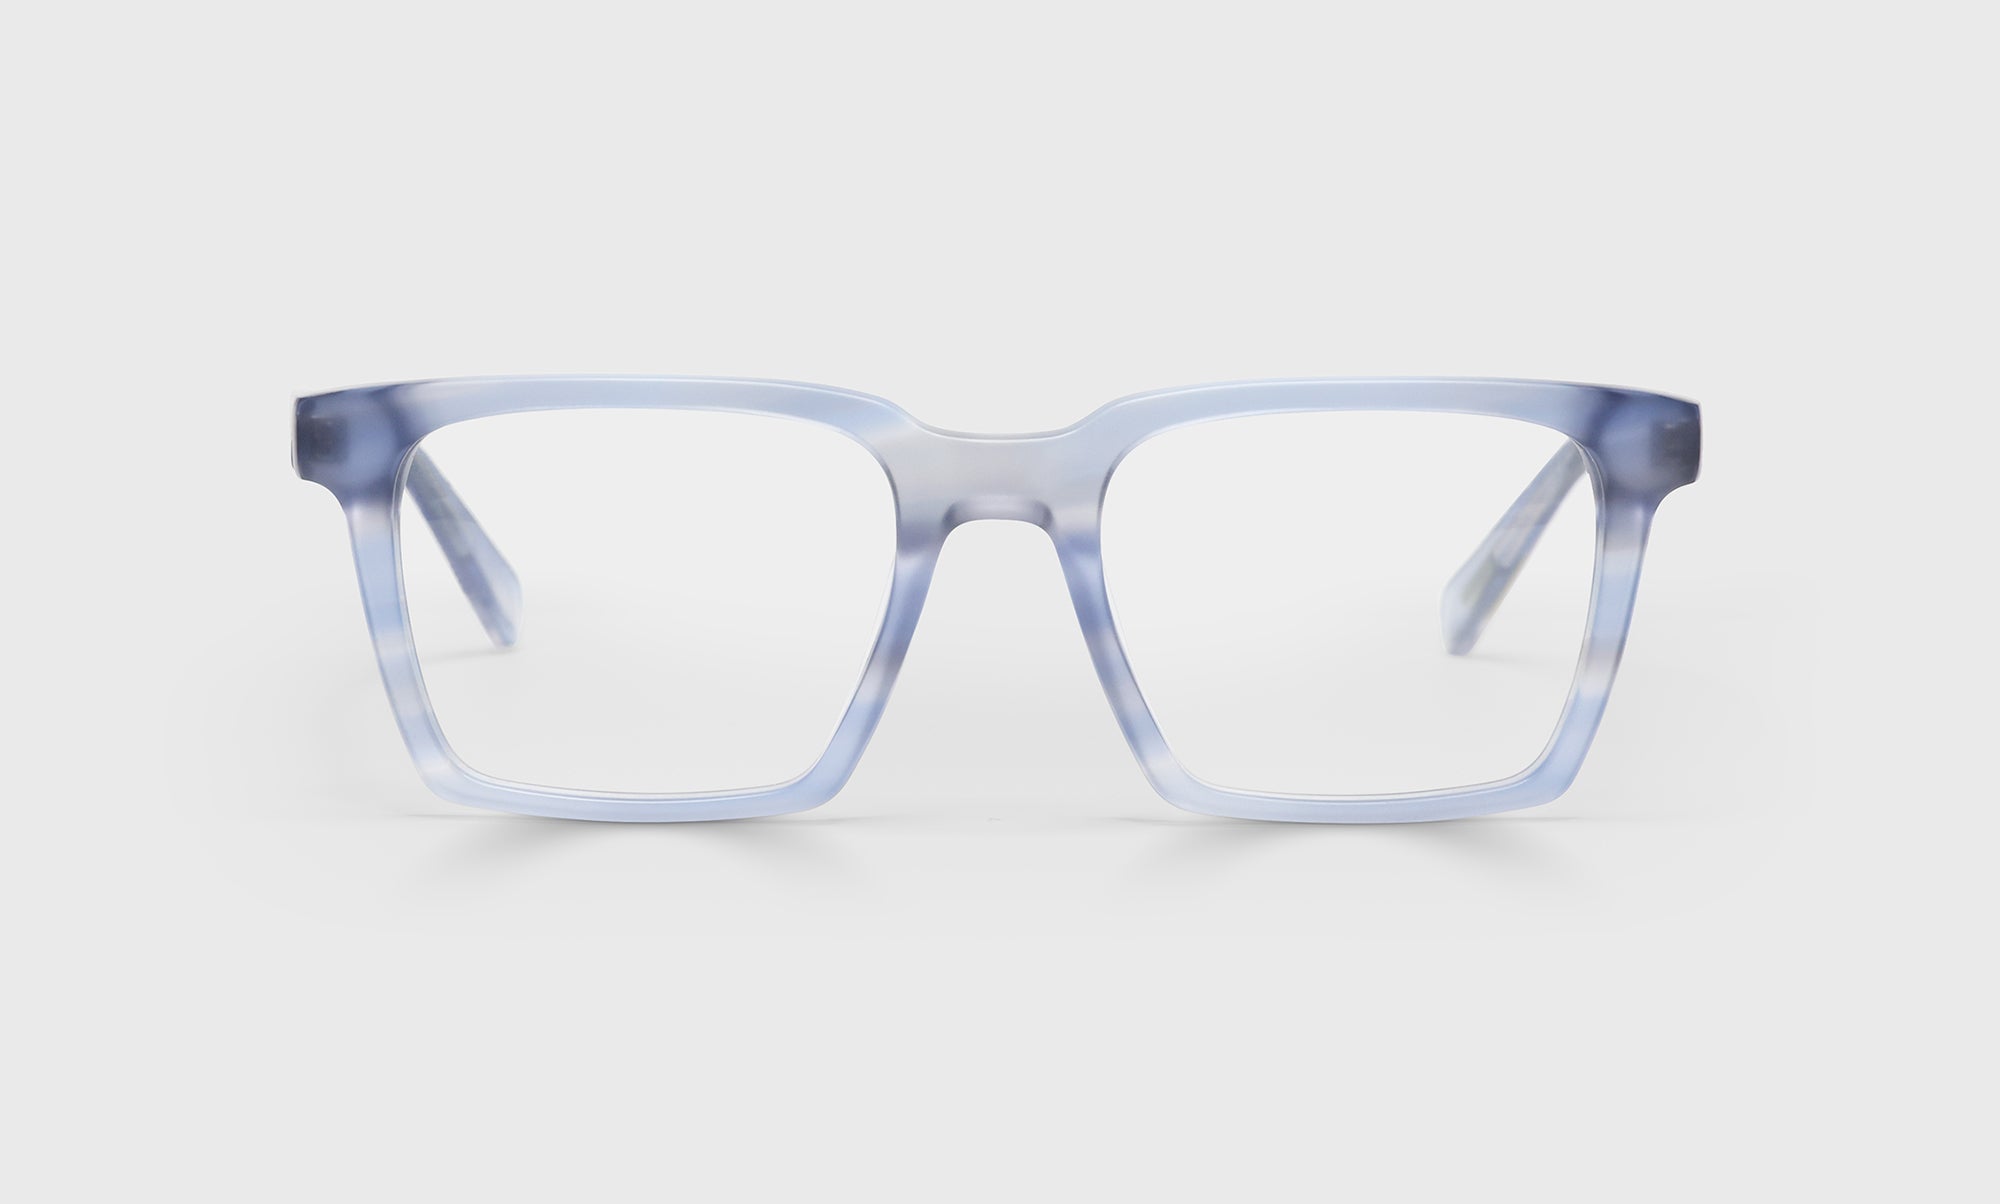 10_eyebobs premium designer rabble-rouser readers, blue light and prescription glasses in pale blue